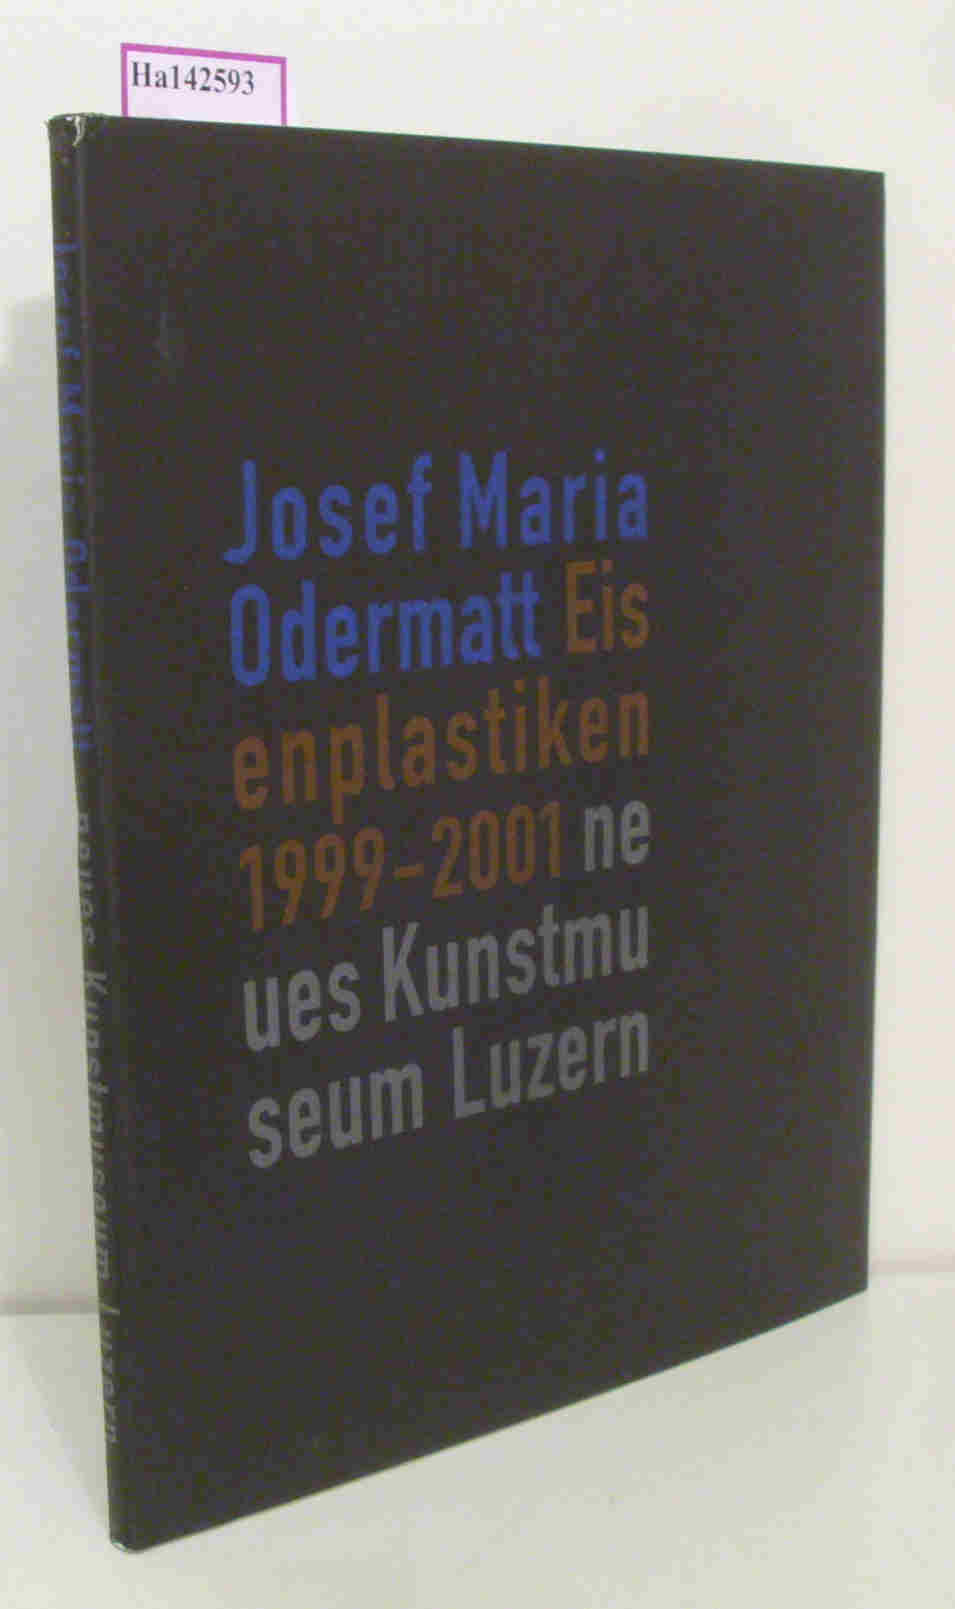 Josef Maria Odermatt. Eisenplastiken 1999-2001. Neues Kunstmuseum Luzern. Katalog zur Ausstellung 5.5.-9.9.2001 in Luzern. - Loock,  Ulrich (Hg.)